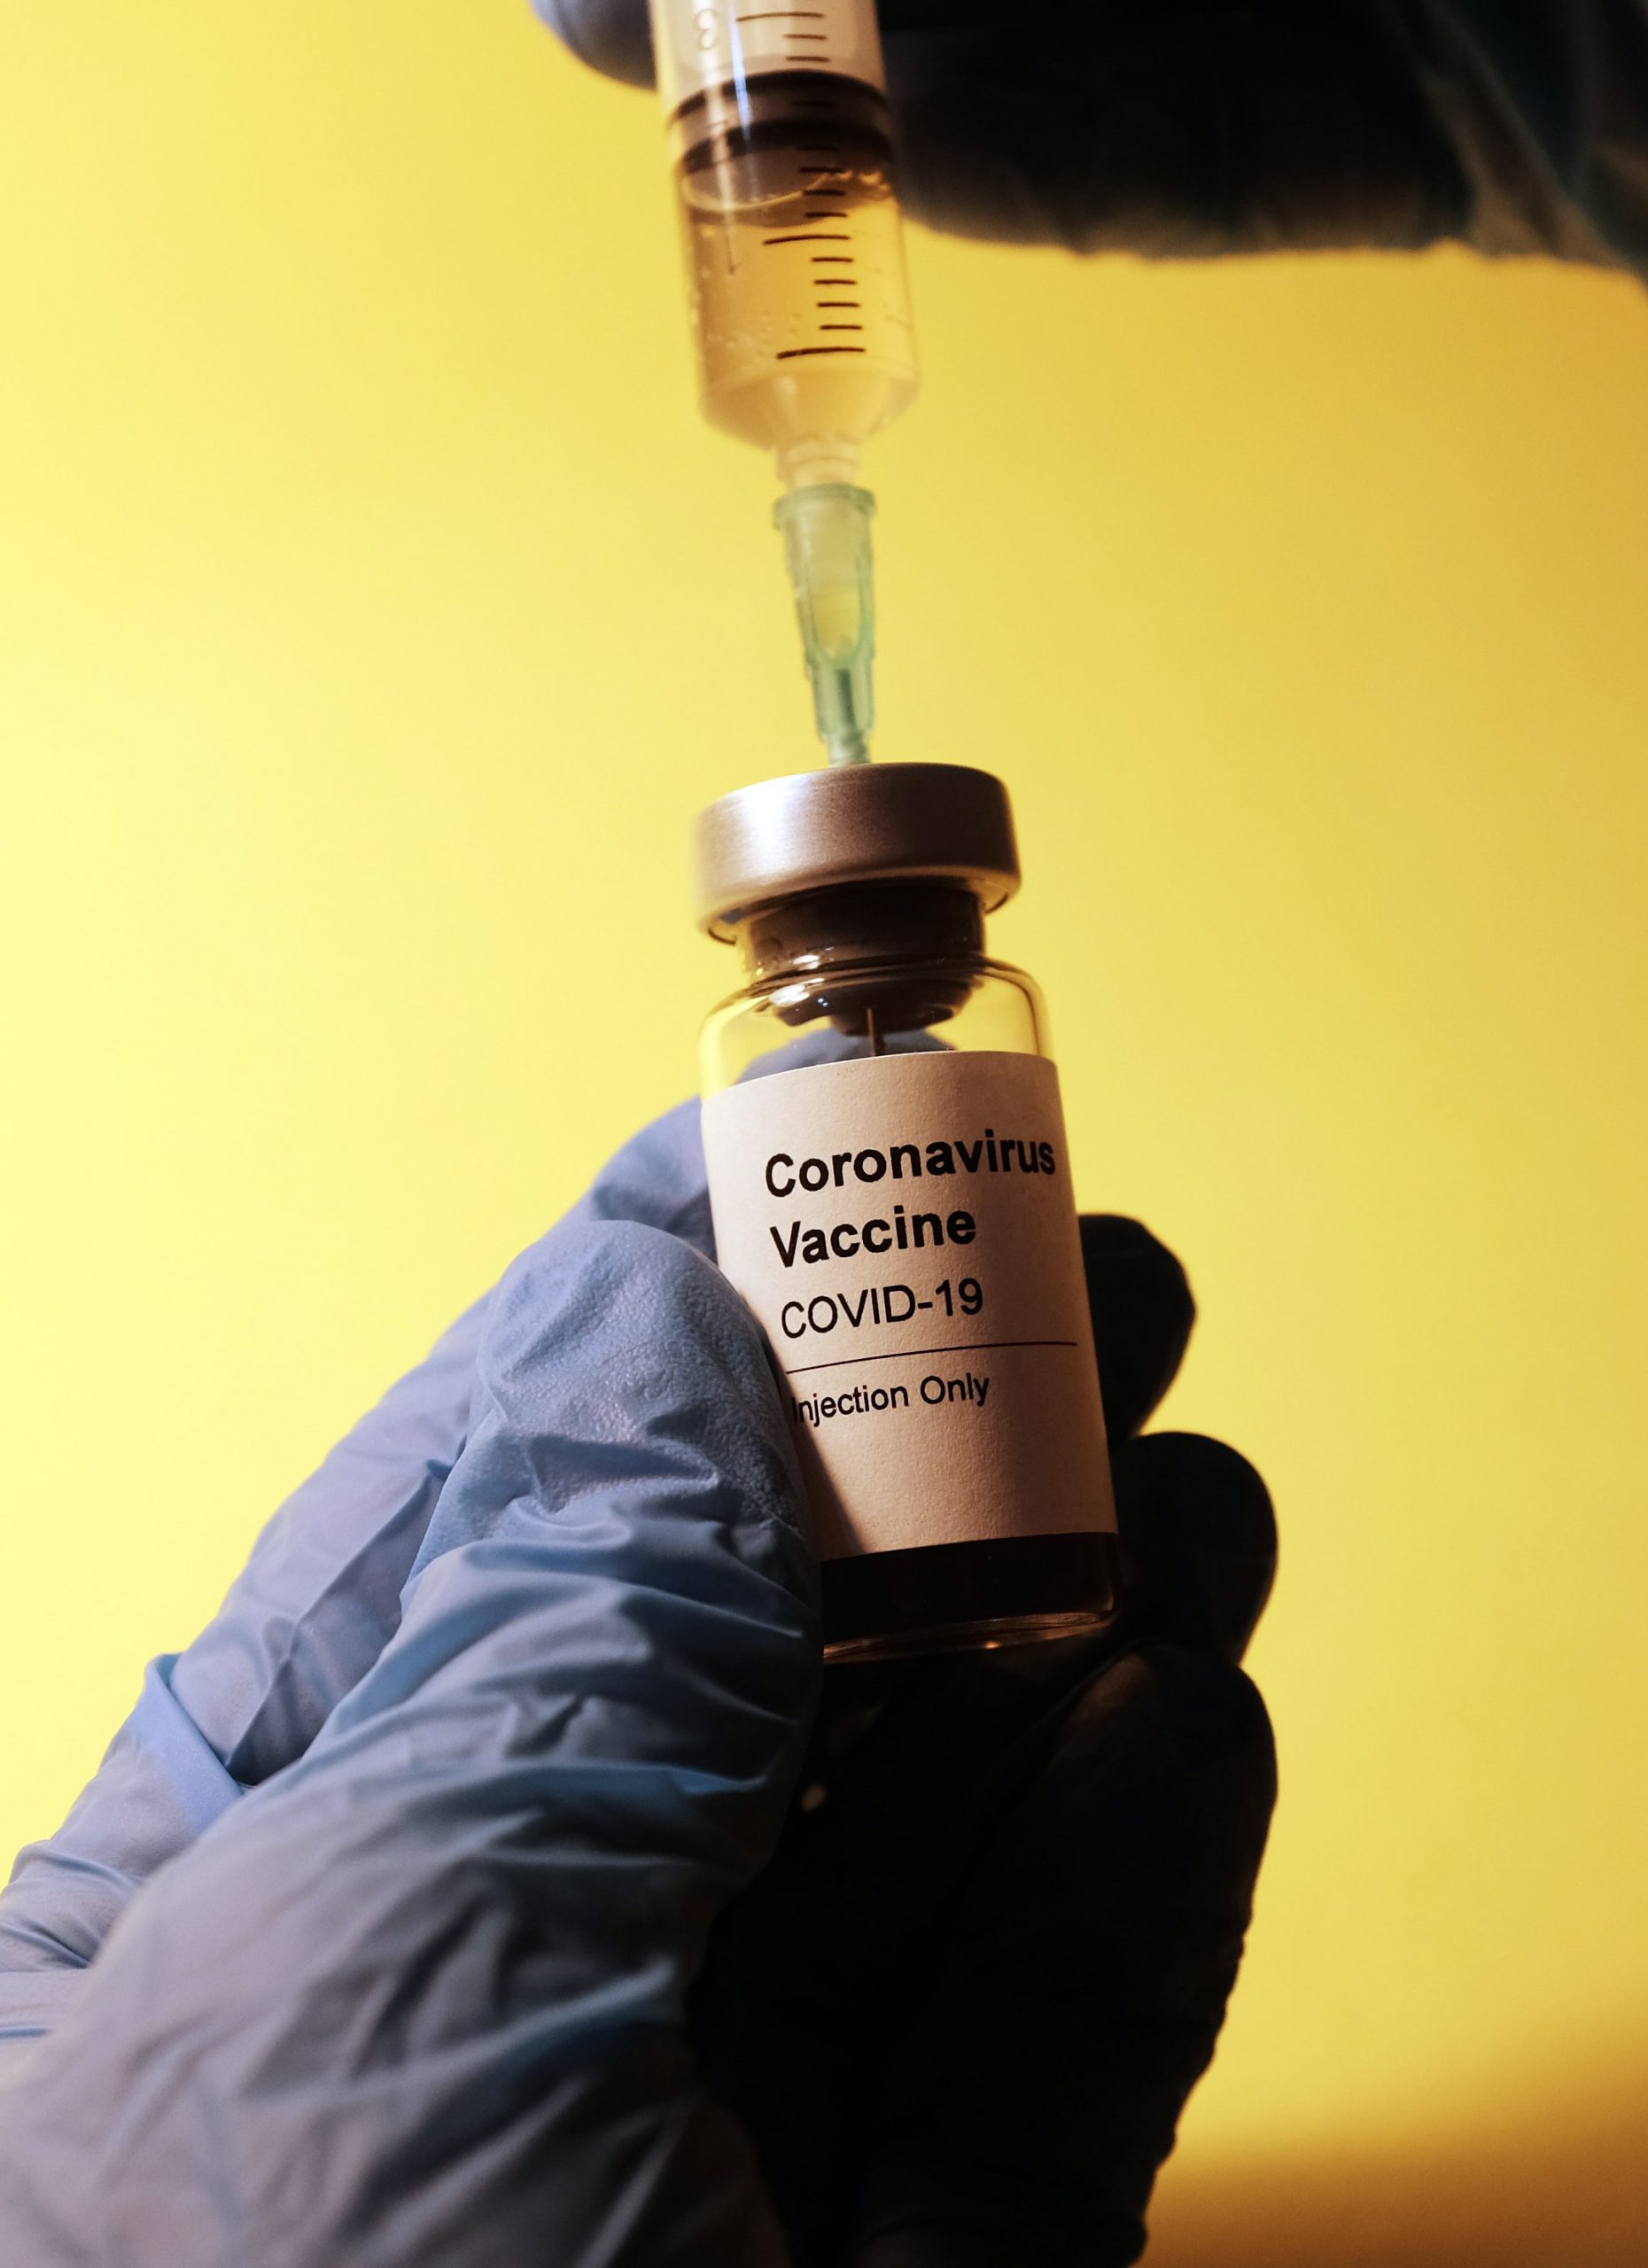 Artigo – Como garantir que freezers com vacinas contra Covid-19 tenham funcionamento ininterrupto